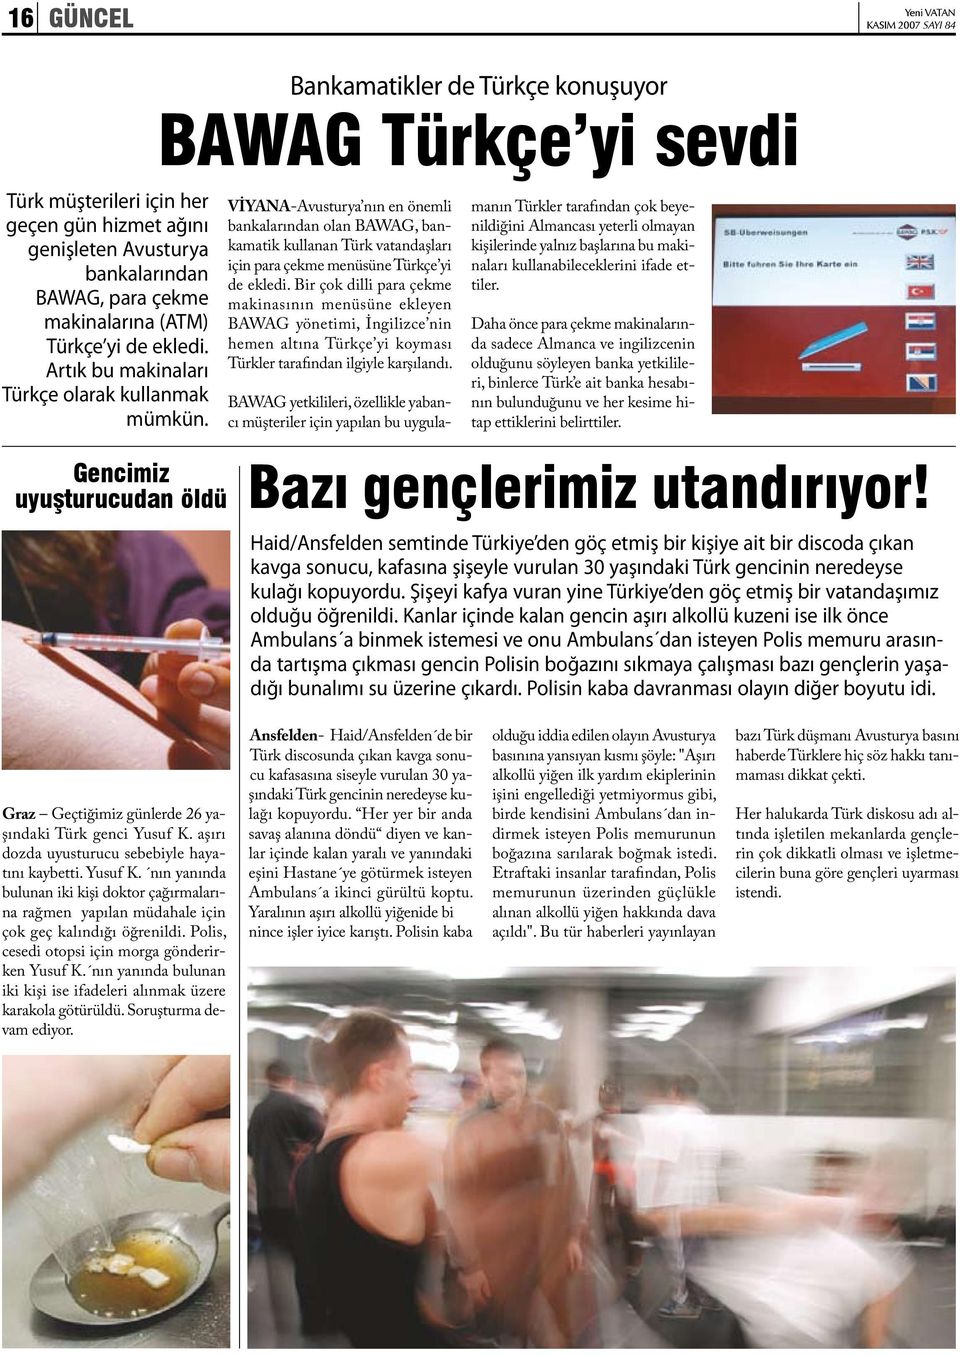 Gencimiz uyuşturucudan öldü Bankamatikler de Türkçe konuşuyor BAWAG Türkçe yi sevdi VİYANA-Avusturya nın en önemli bankalarından olan BAWAG, bankamatik kullanan Türk vatandaşları için para çekme